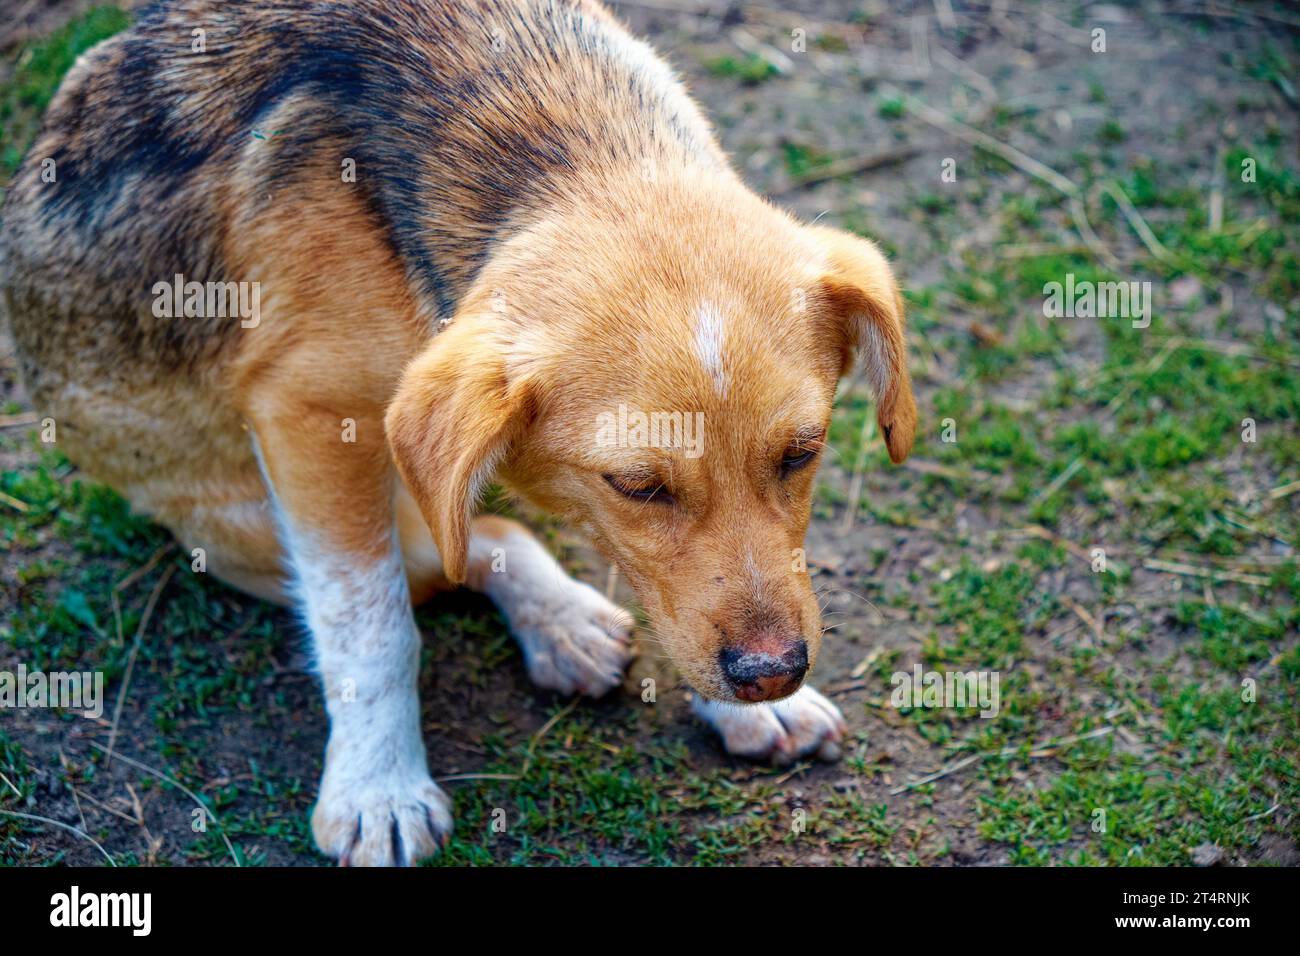 Un chien au pelage brun et blanc, assis sur un champ herbeux. Un petit mongrel malade est assis. Chien avec un regard triste et malade. Banque D'Images